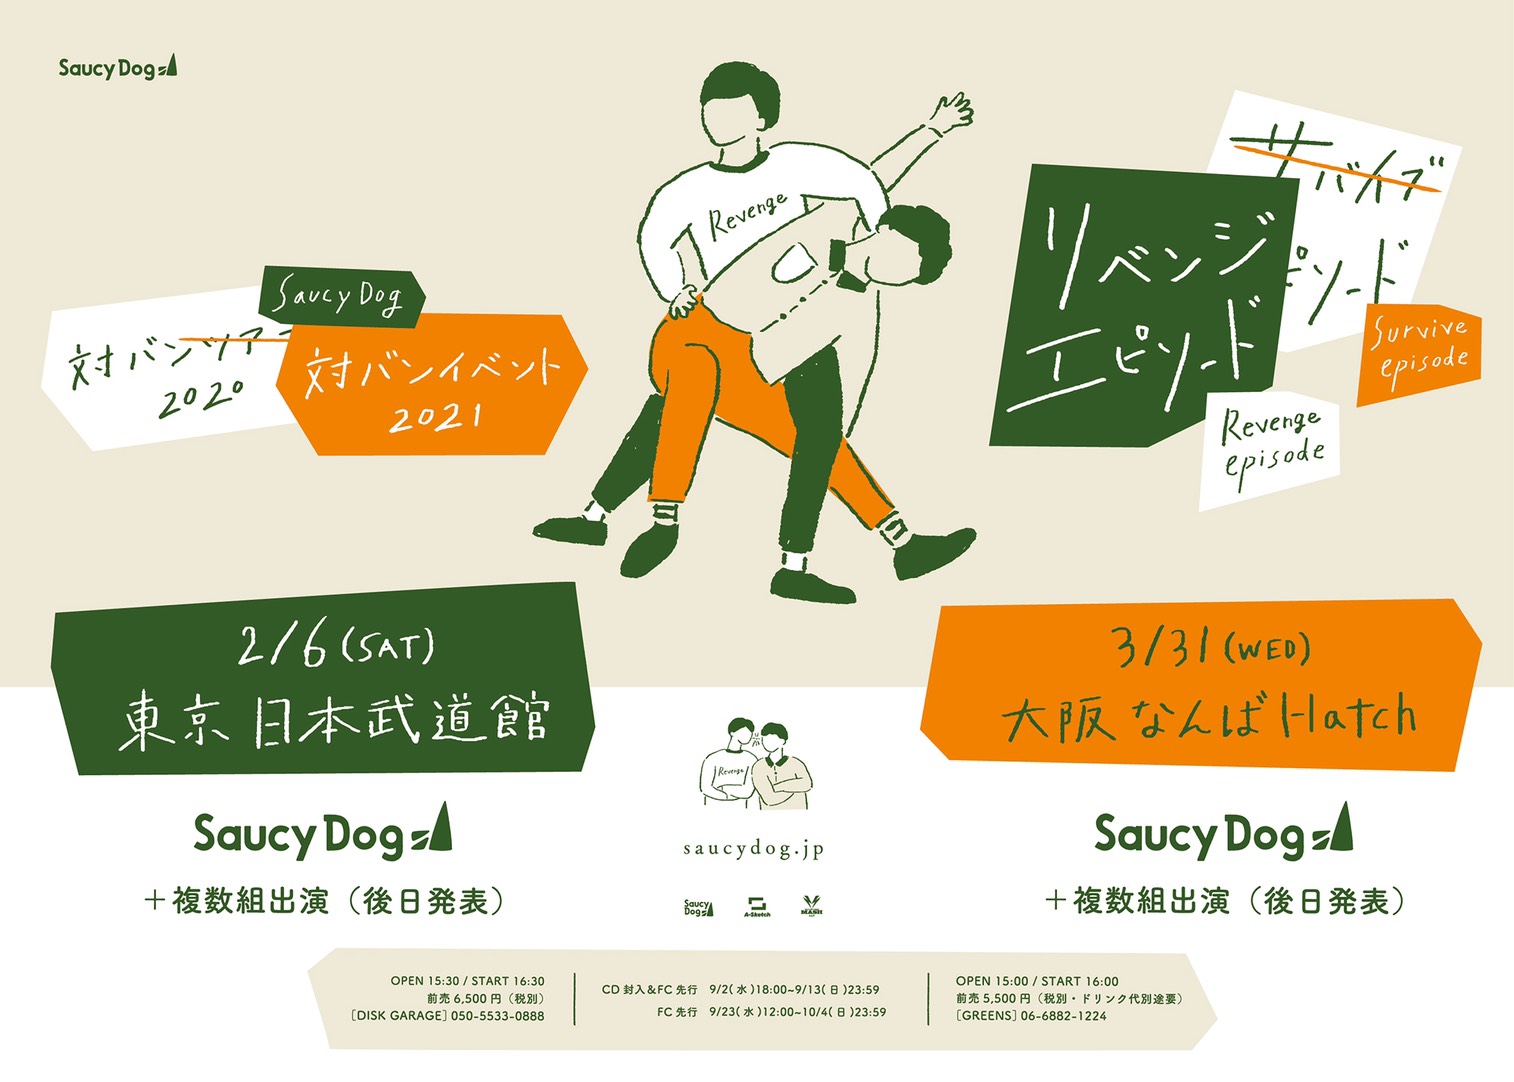 対バンイベント リベンジエピソード 開催決定 アルバムセルフライナーノーツ公開 Saucy Dog Official Site